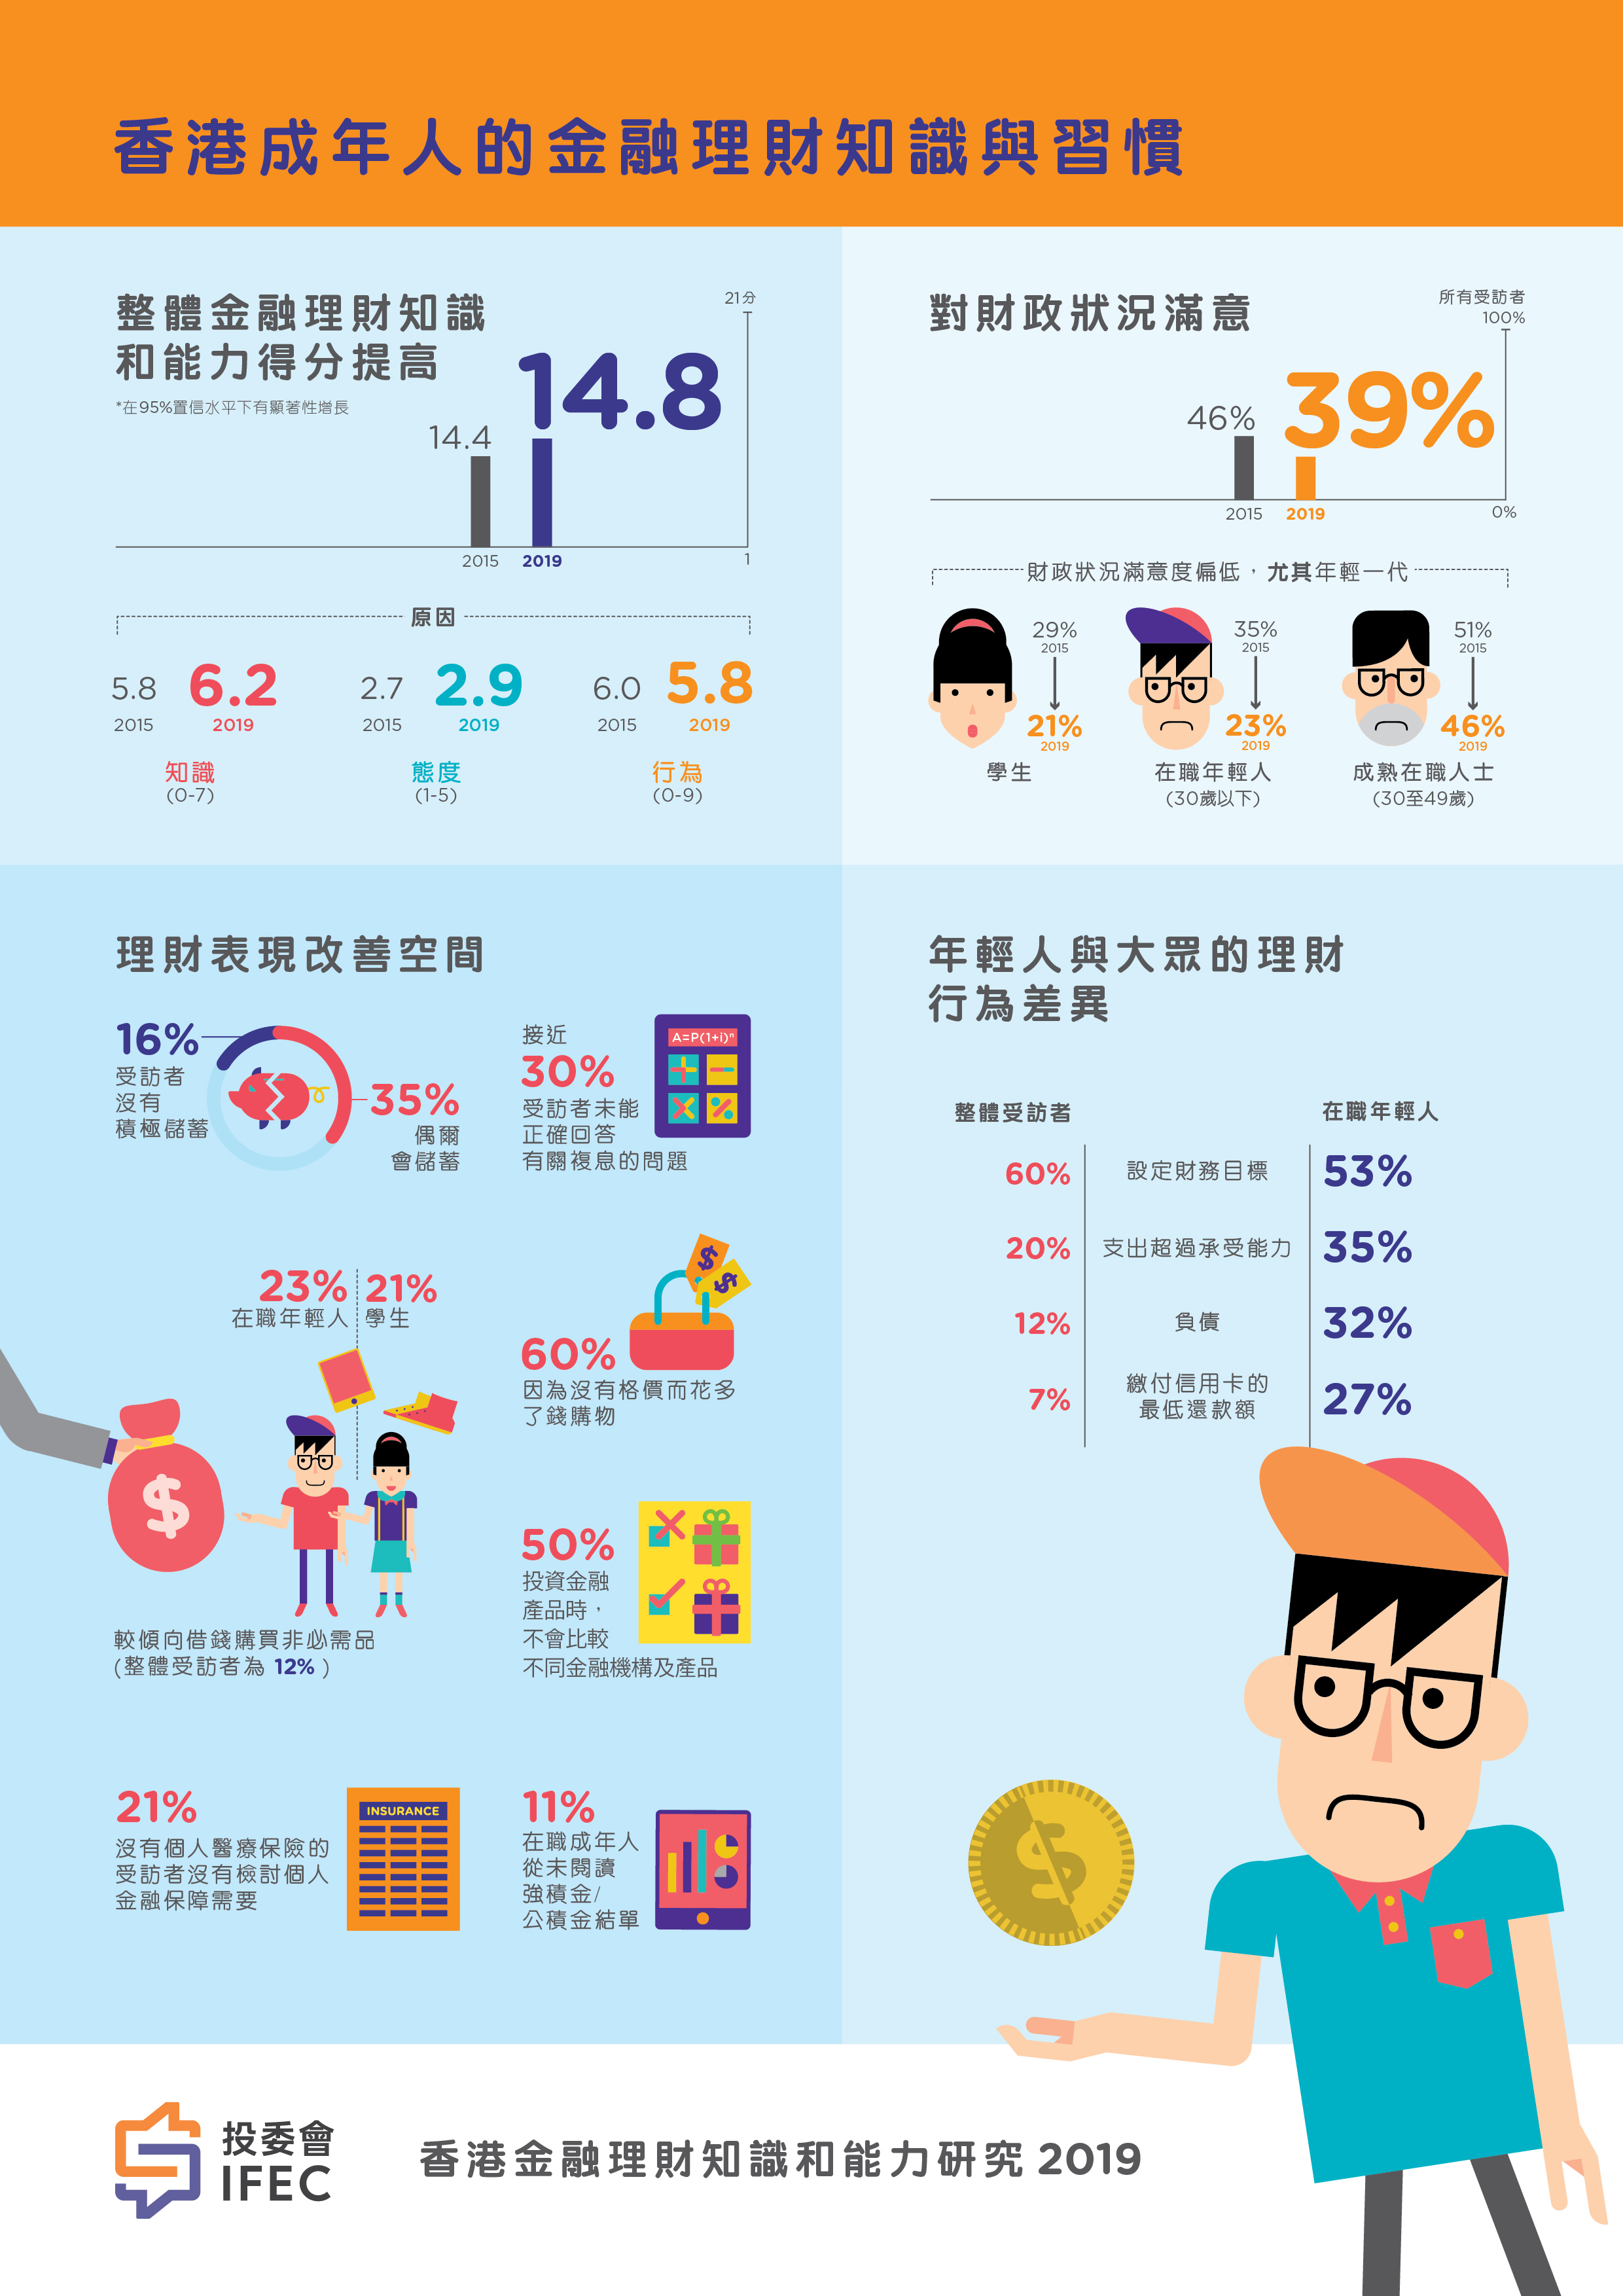 香港成年人的金融理財知識與習慣